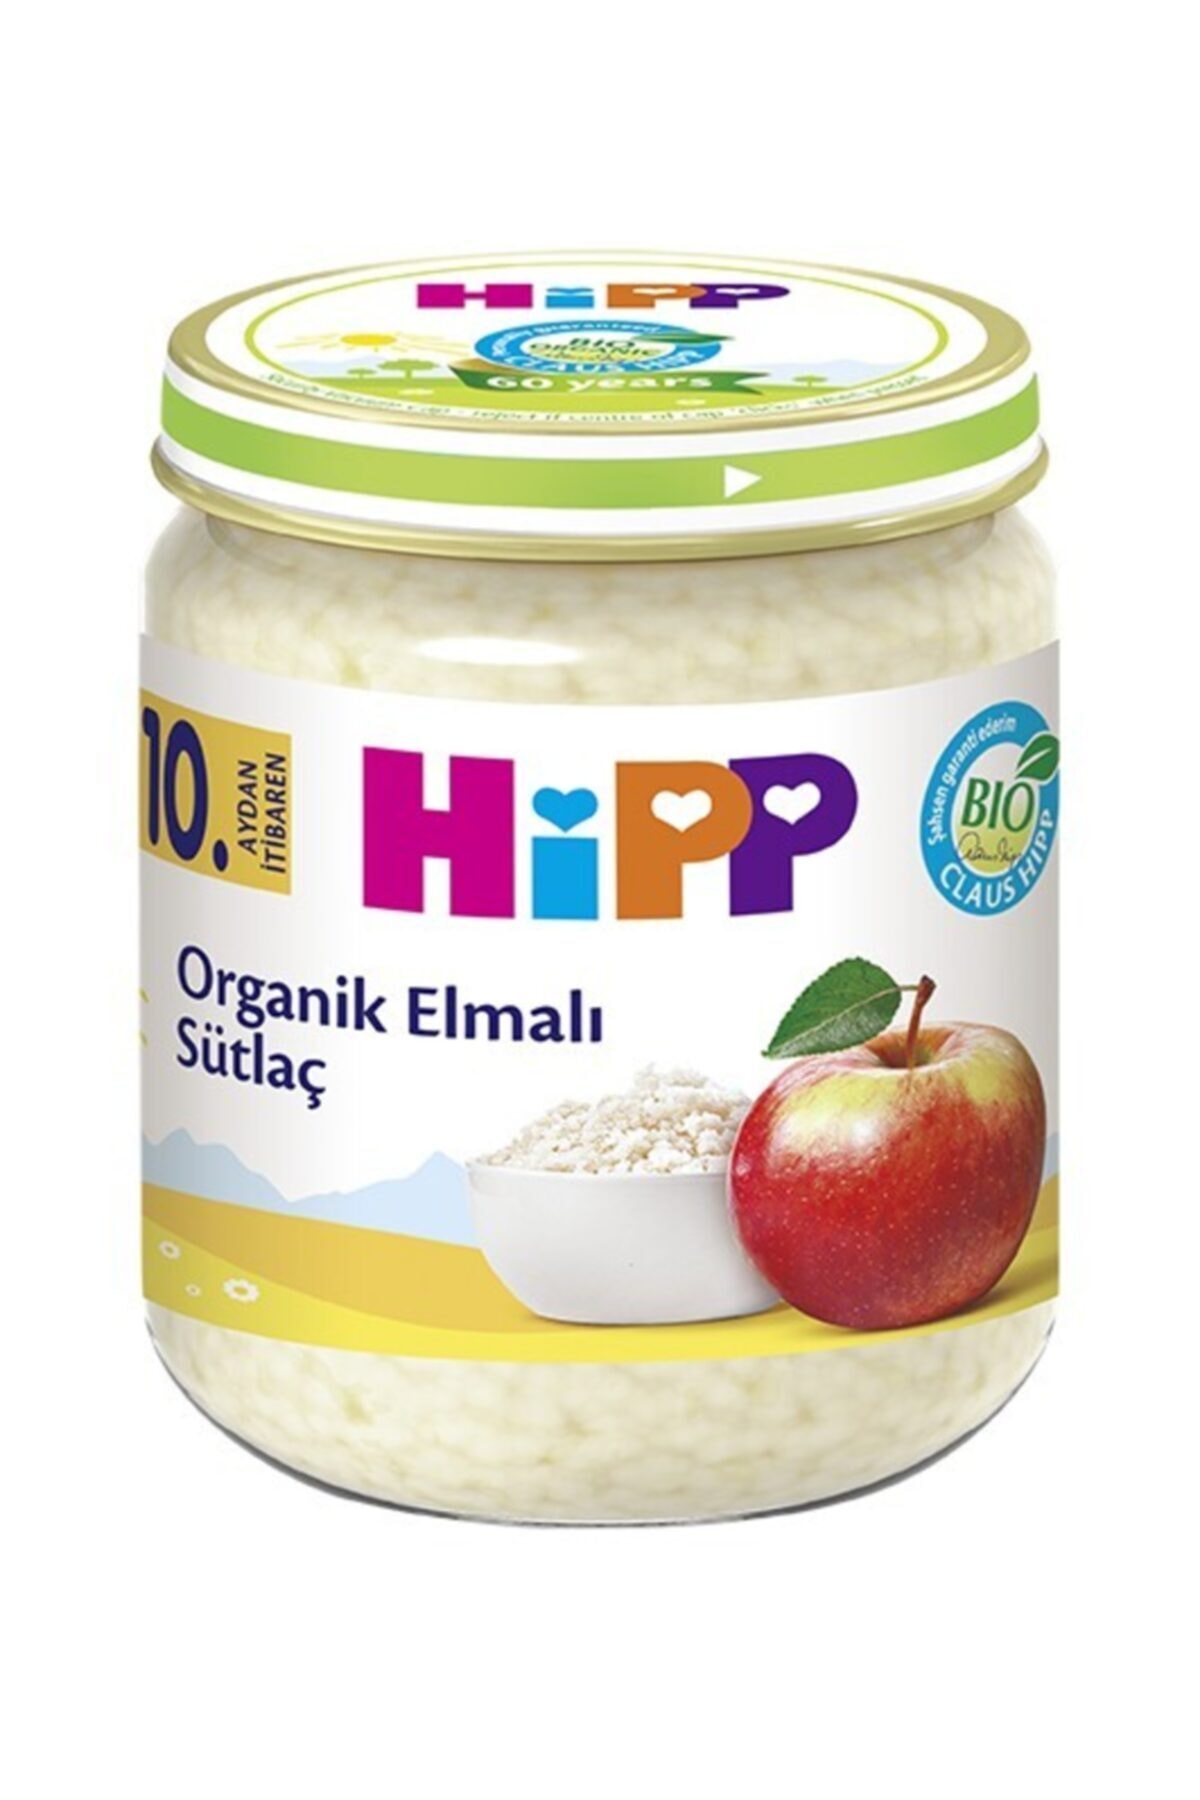 Hipp Organik Elmalı Sütlaç 200gr